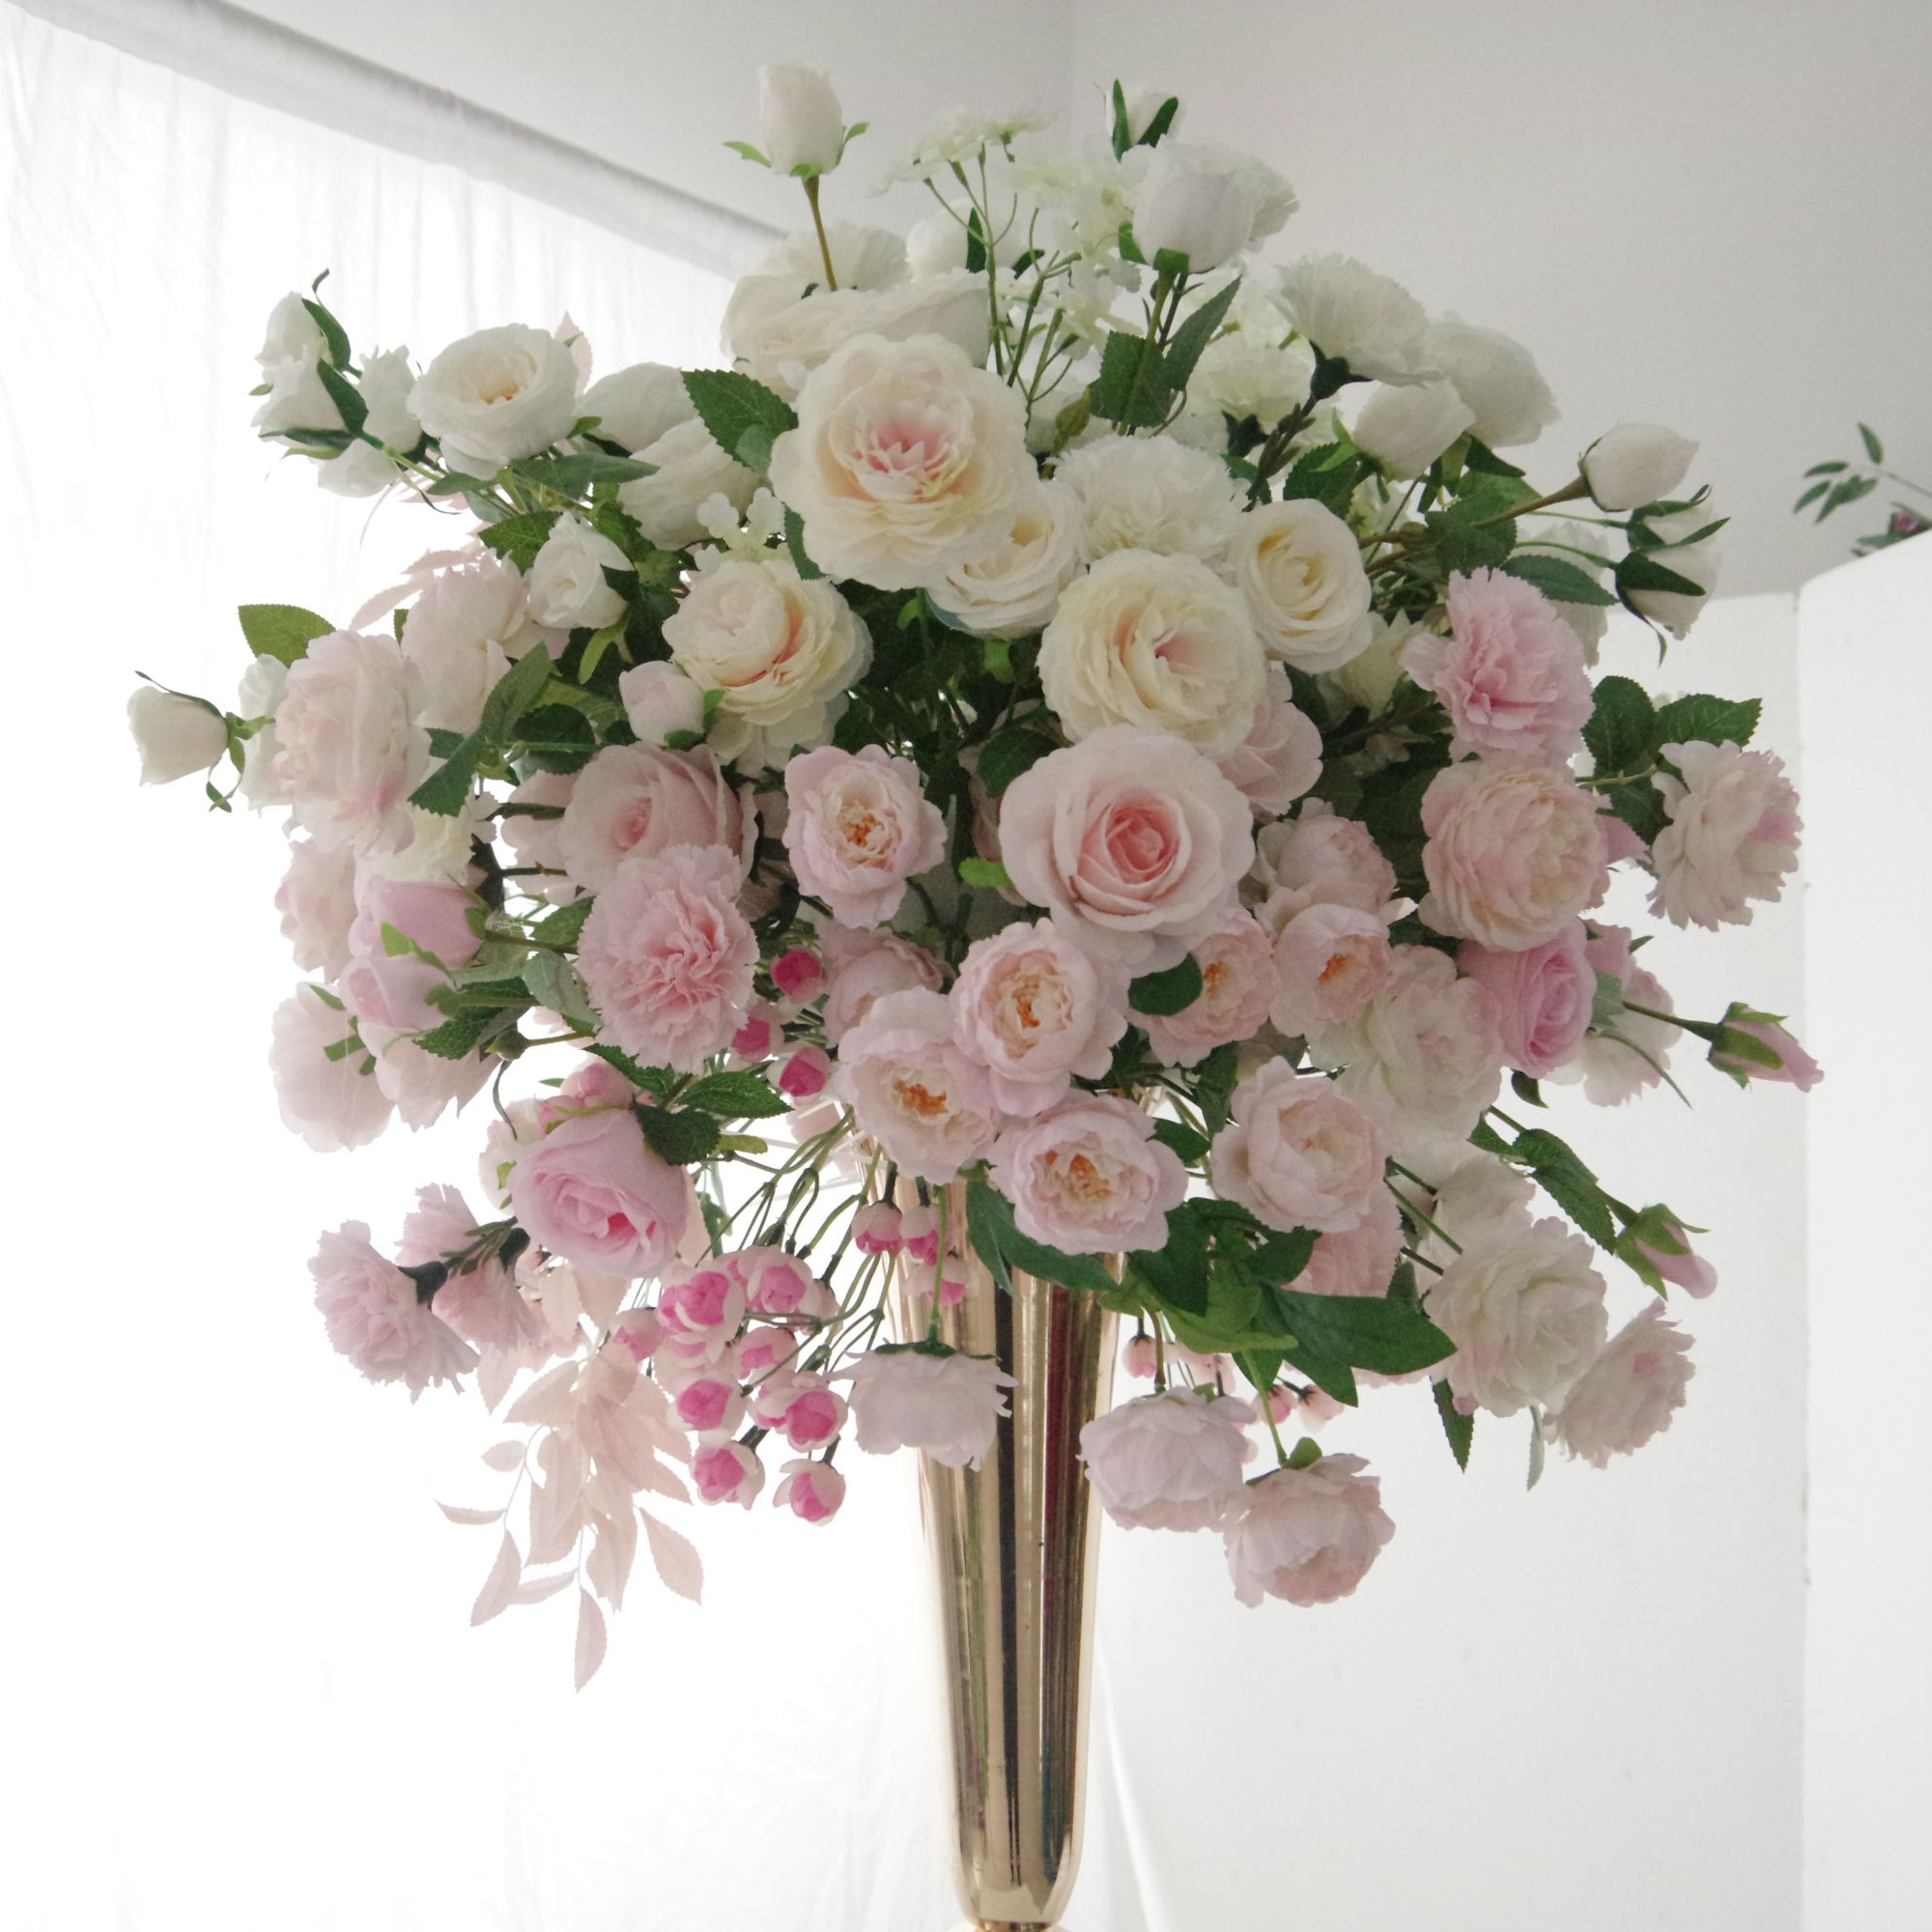 همسات أنيقة-مجموعة رقيقة من الورود الوردية وسط حجاب من الأزهار البيضاء